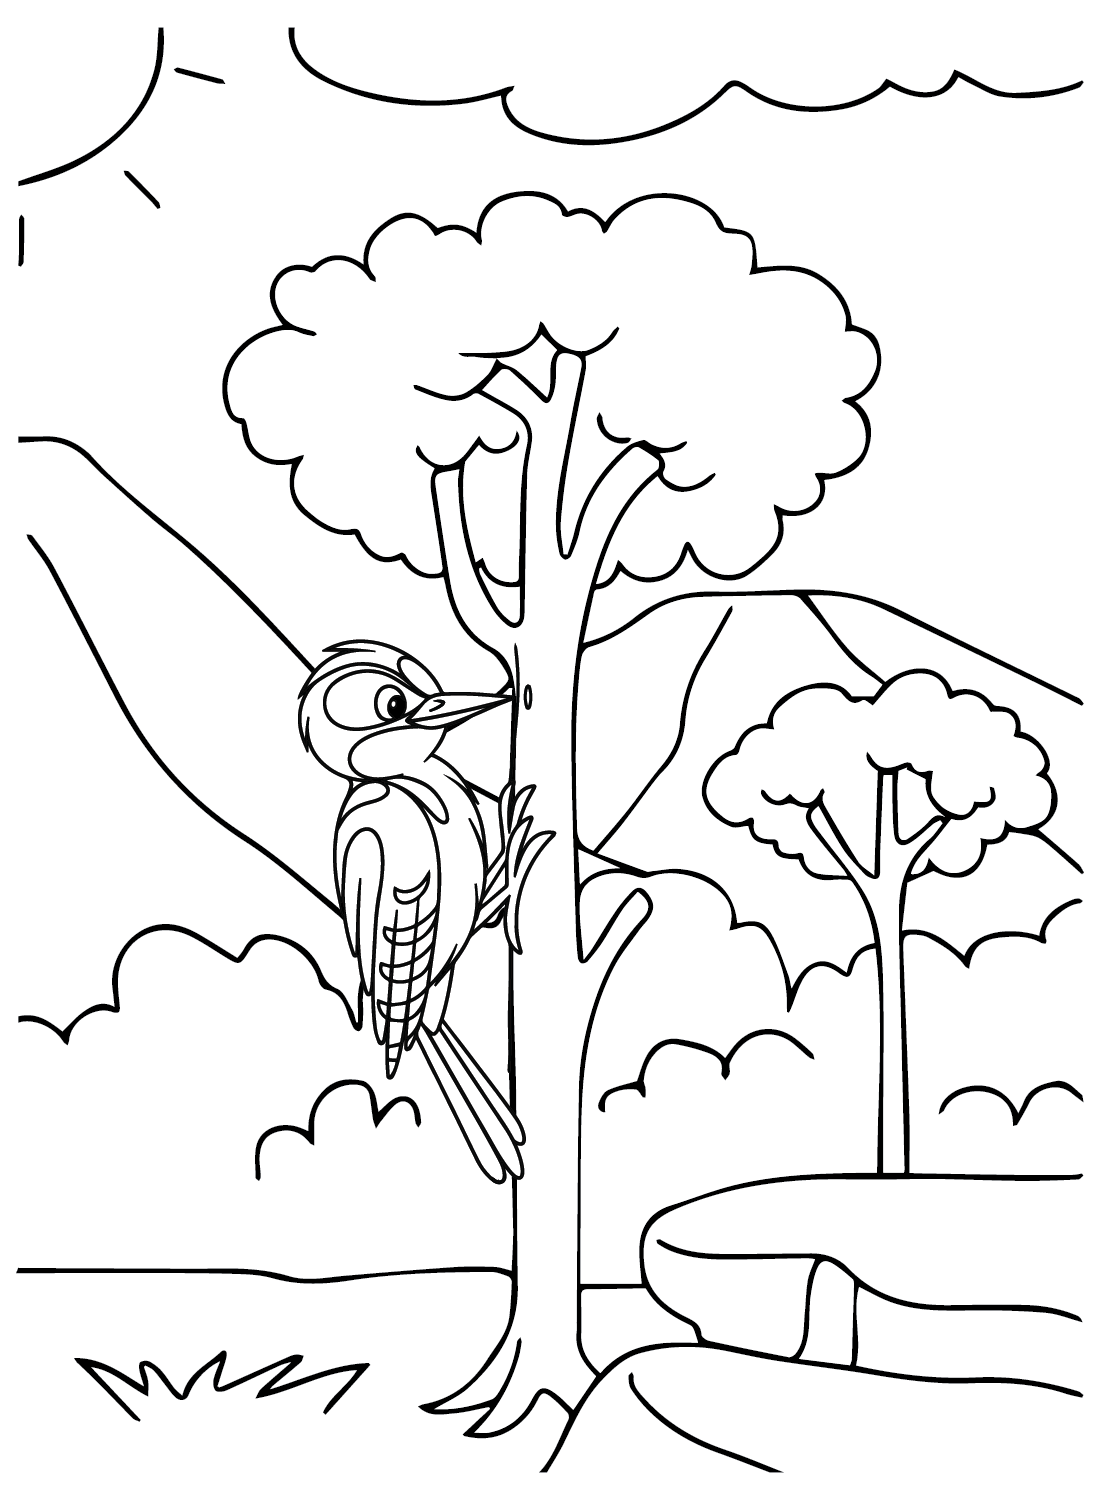 Página para colorir de pássaro pica-pau do pica-pau